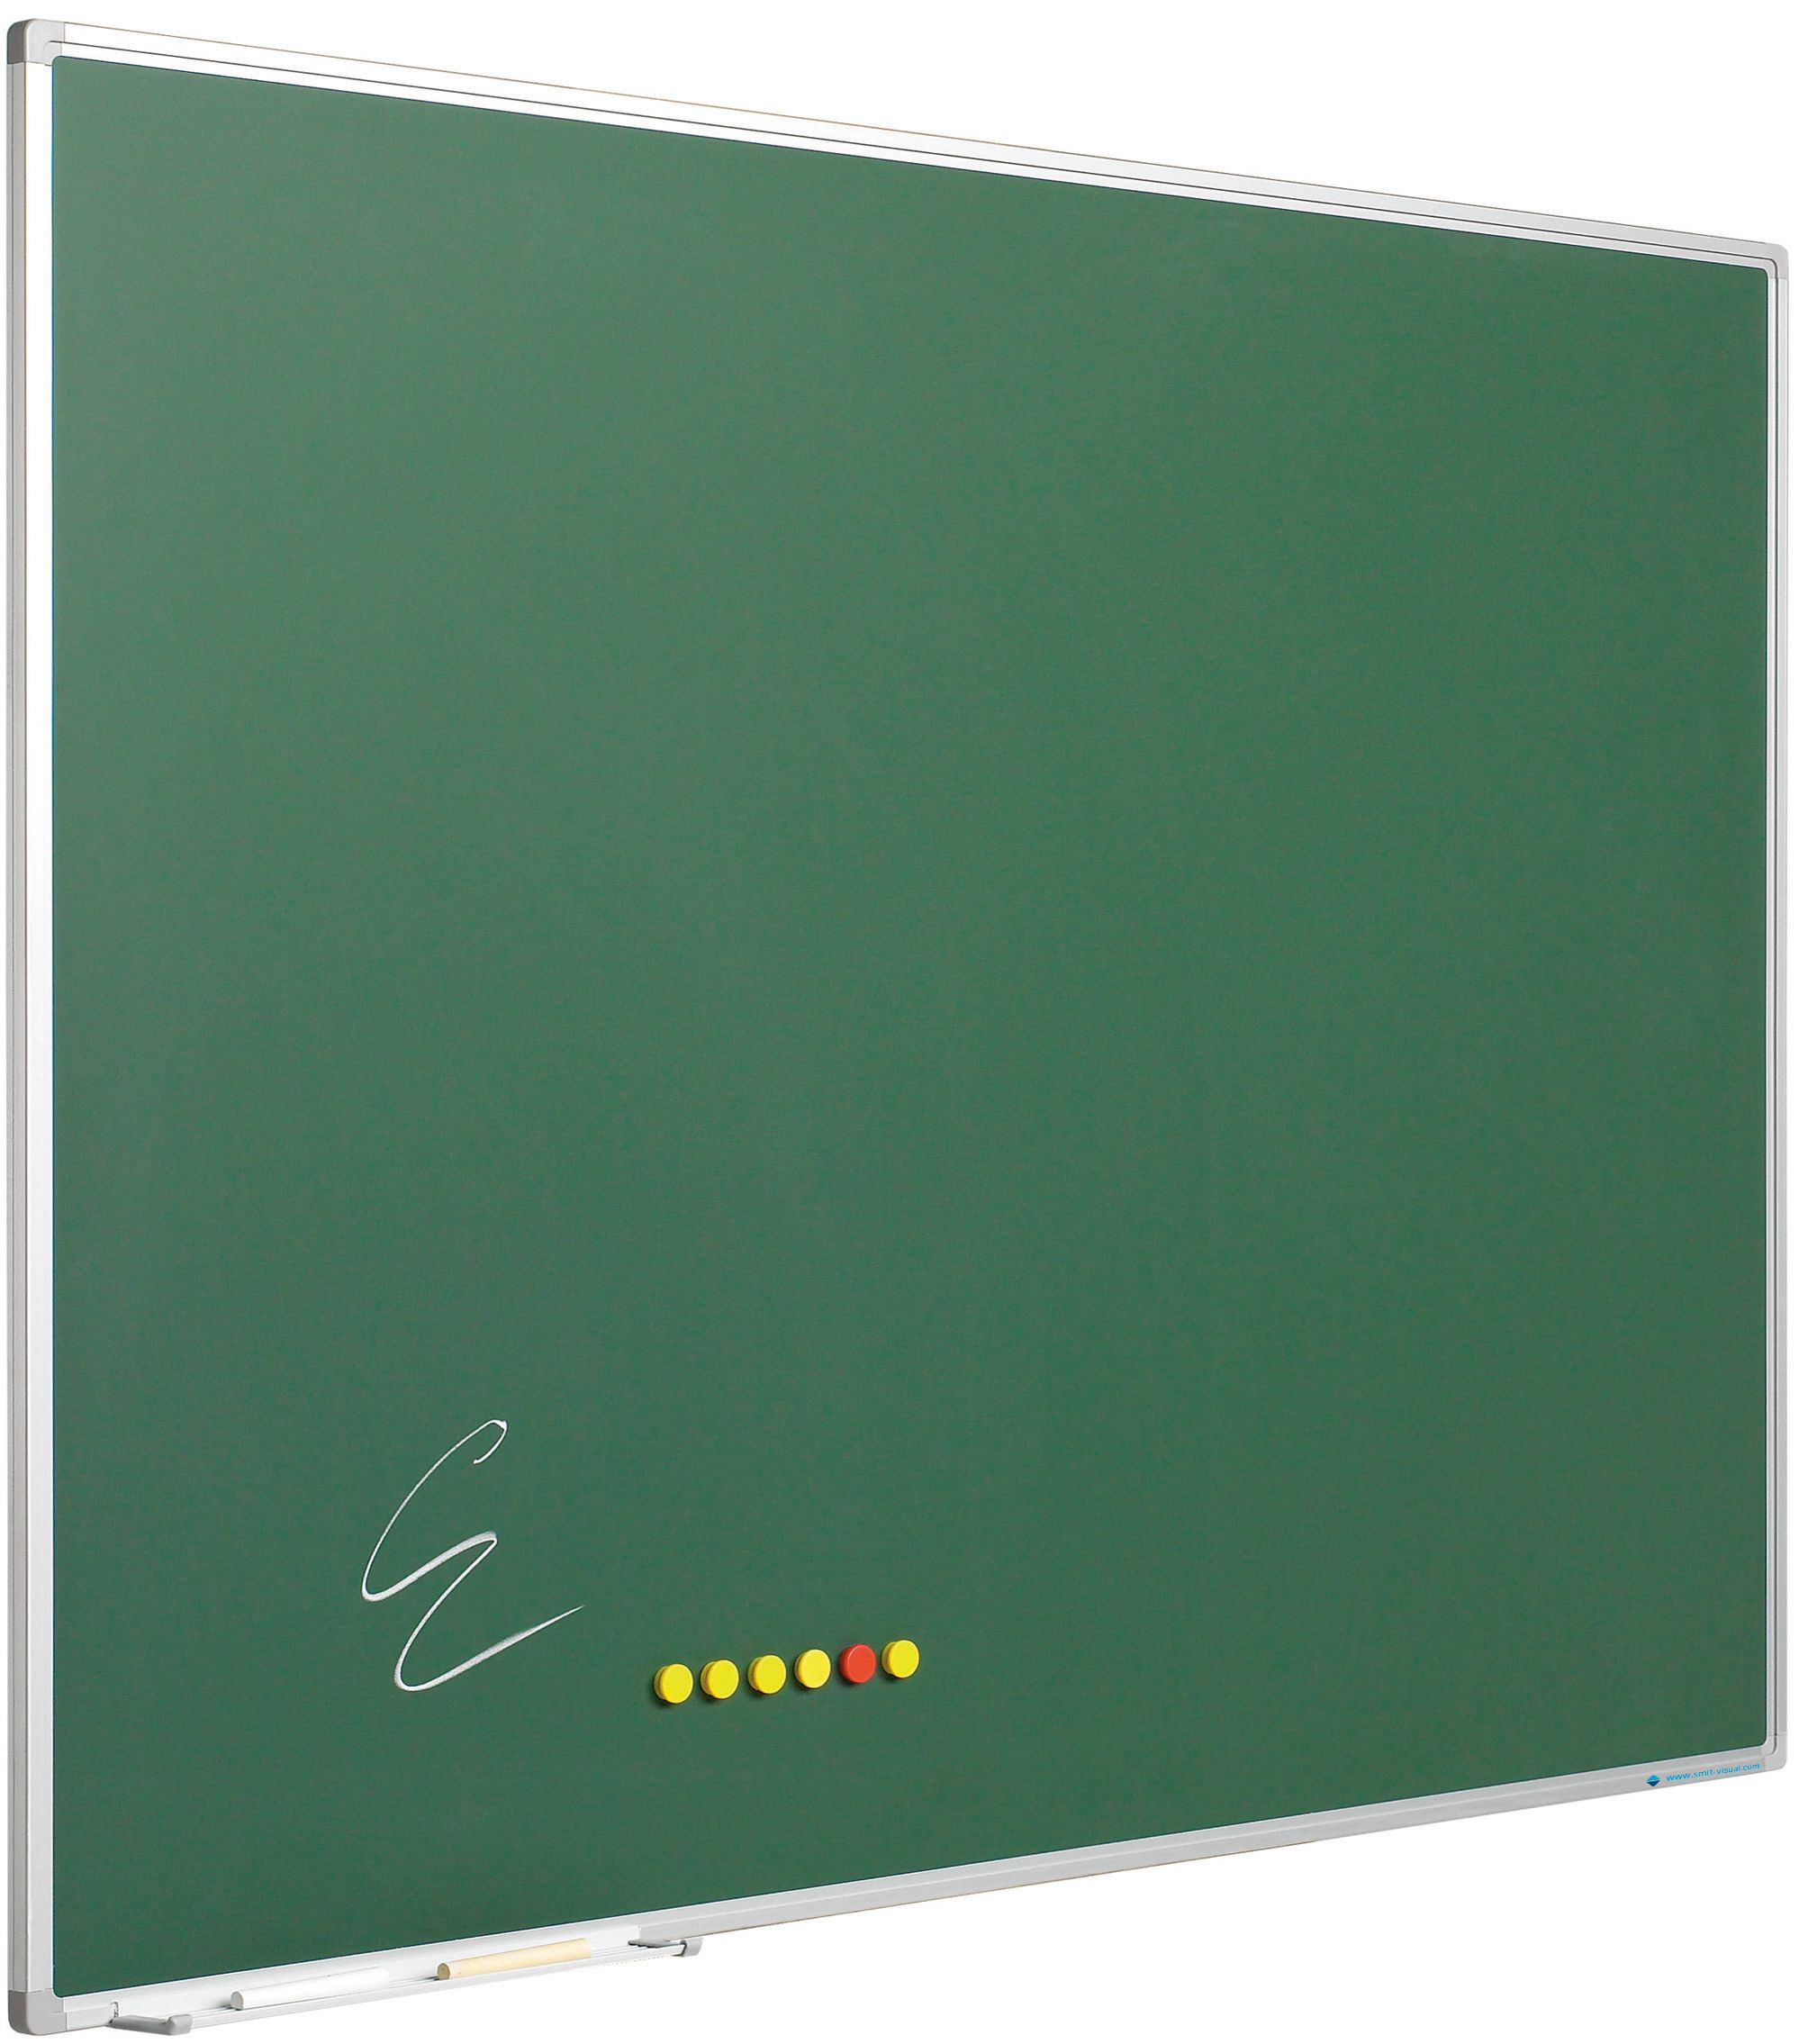 Krijtbord Softline profiel 8mm, emailstaal groen - 100x200 cm